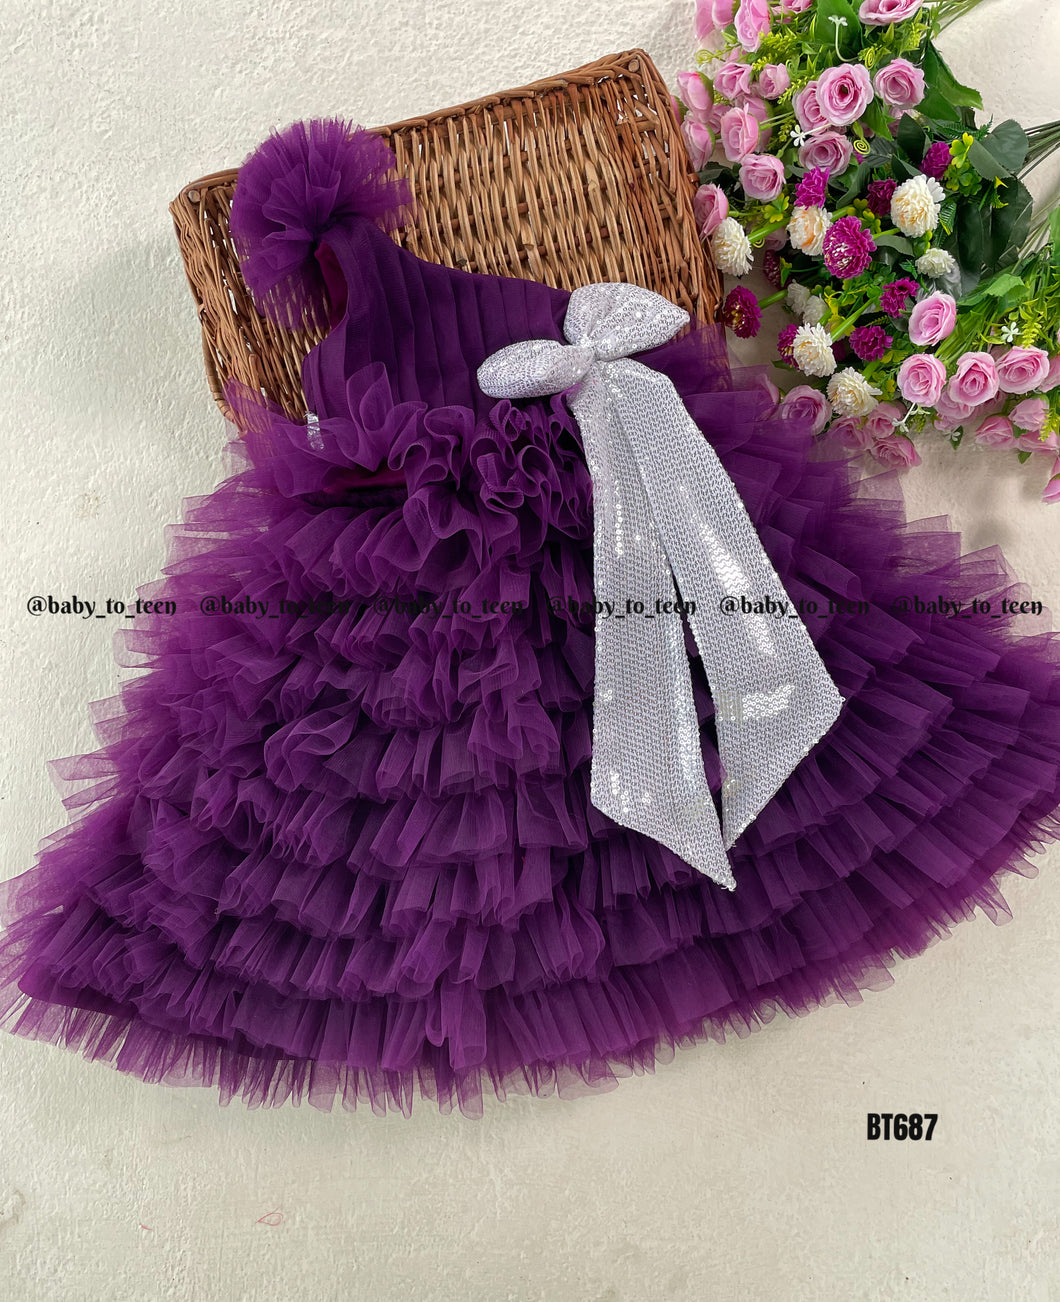 BT687 Regal Amethyst: Majestic Purple Party Dress